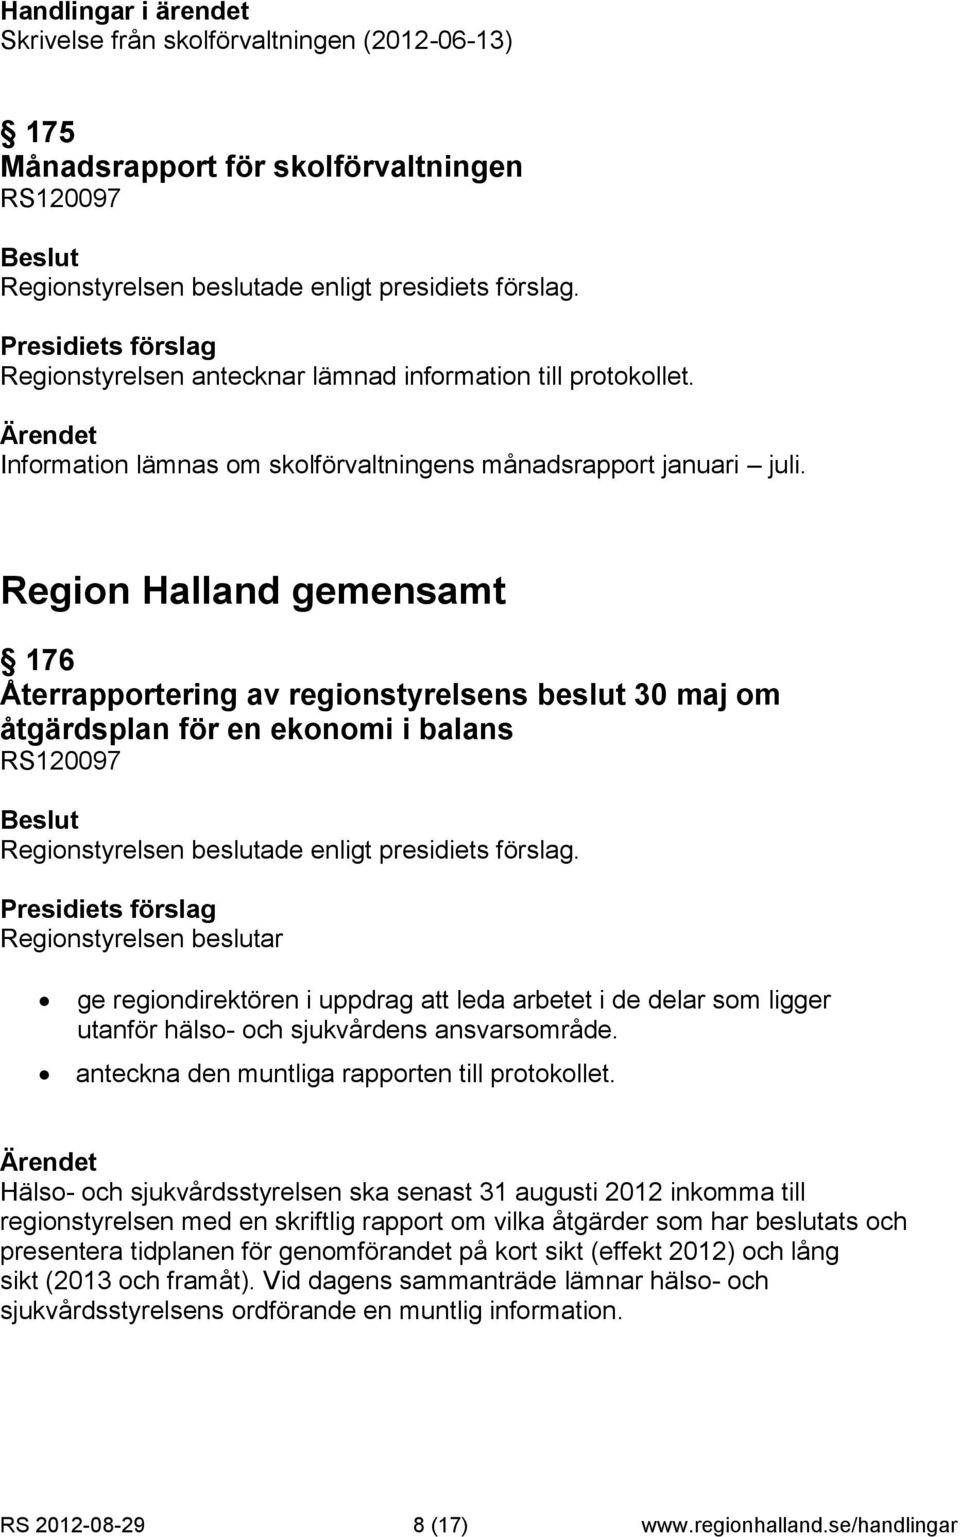 Region Halland gemensamt 176 Återrapportering av regionstyrelsens beslut 30 maj om åtgärdsplan för en ekonomi i balans RS120097 Regionstyrelsen beslutar ge regiondirektören i uppdrag att leda arbetet